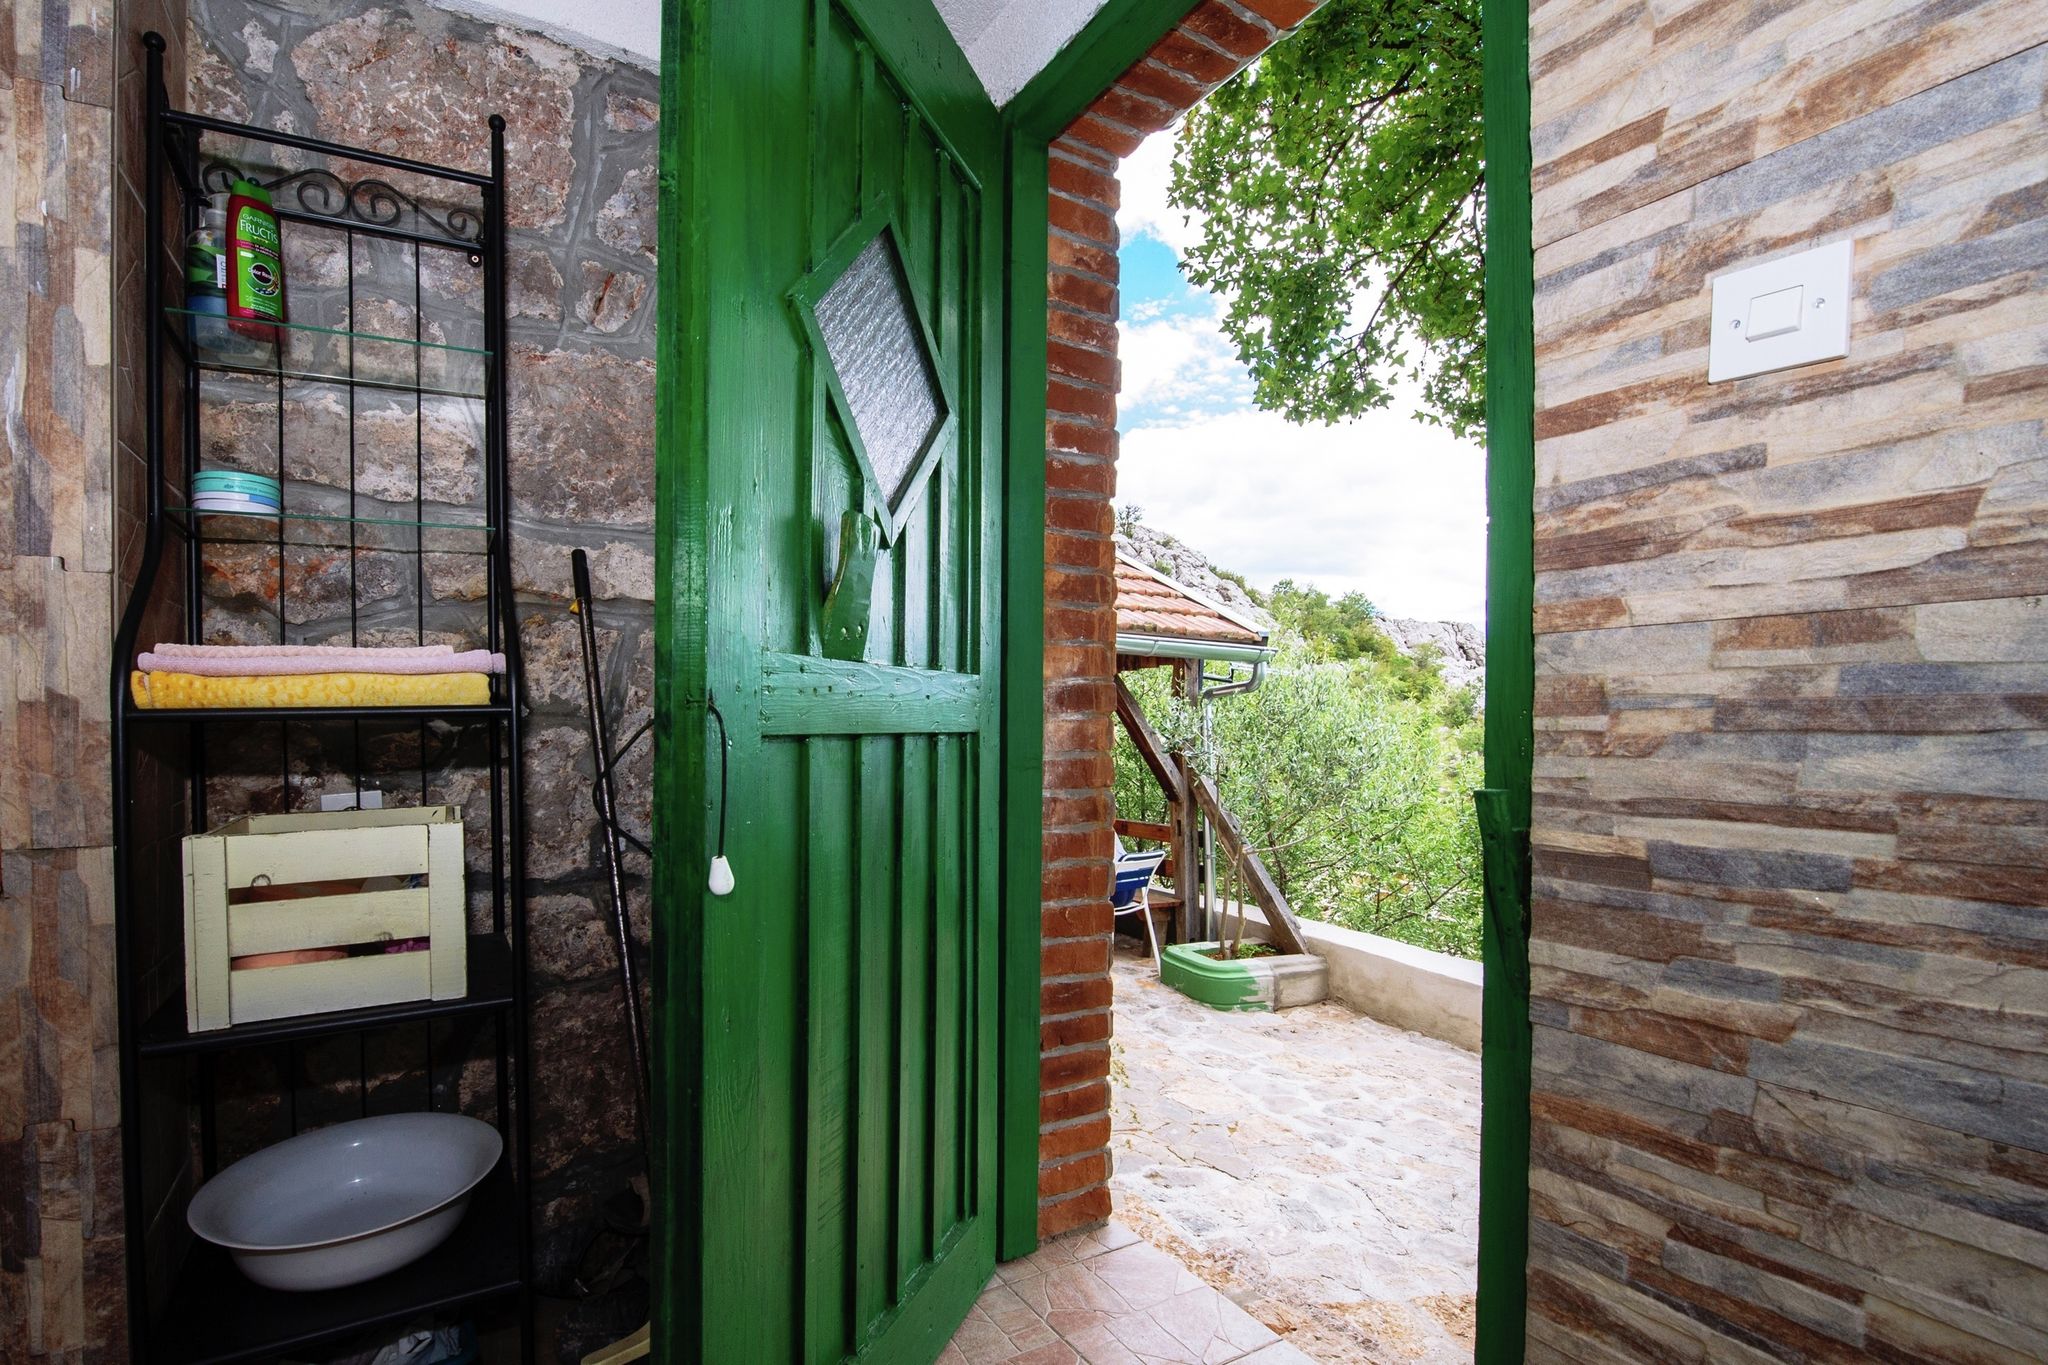 Belle maison de vacances à Starigrad avec jardin